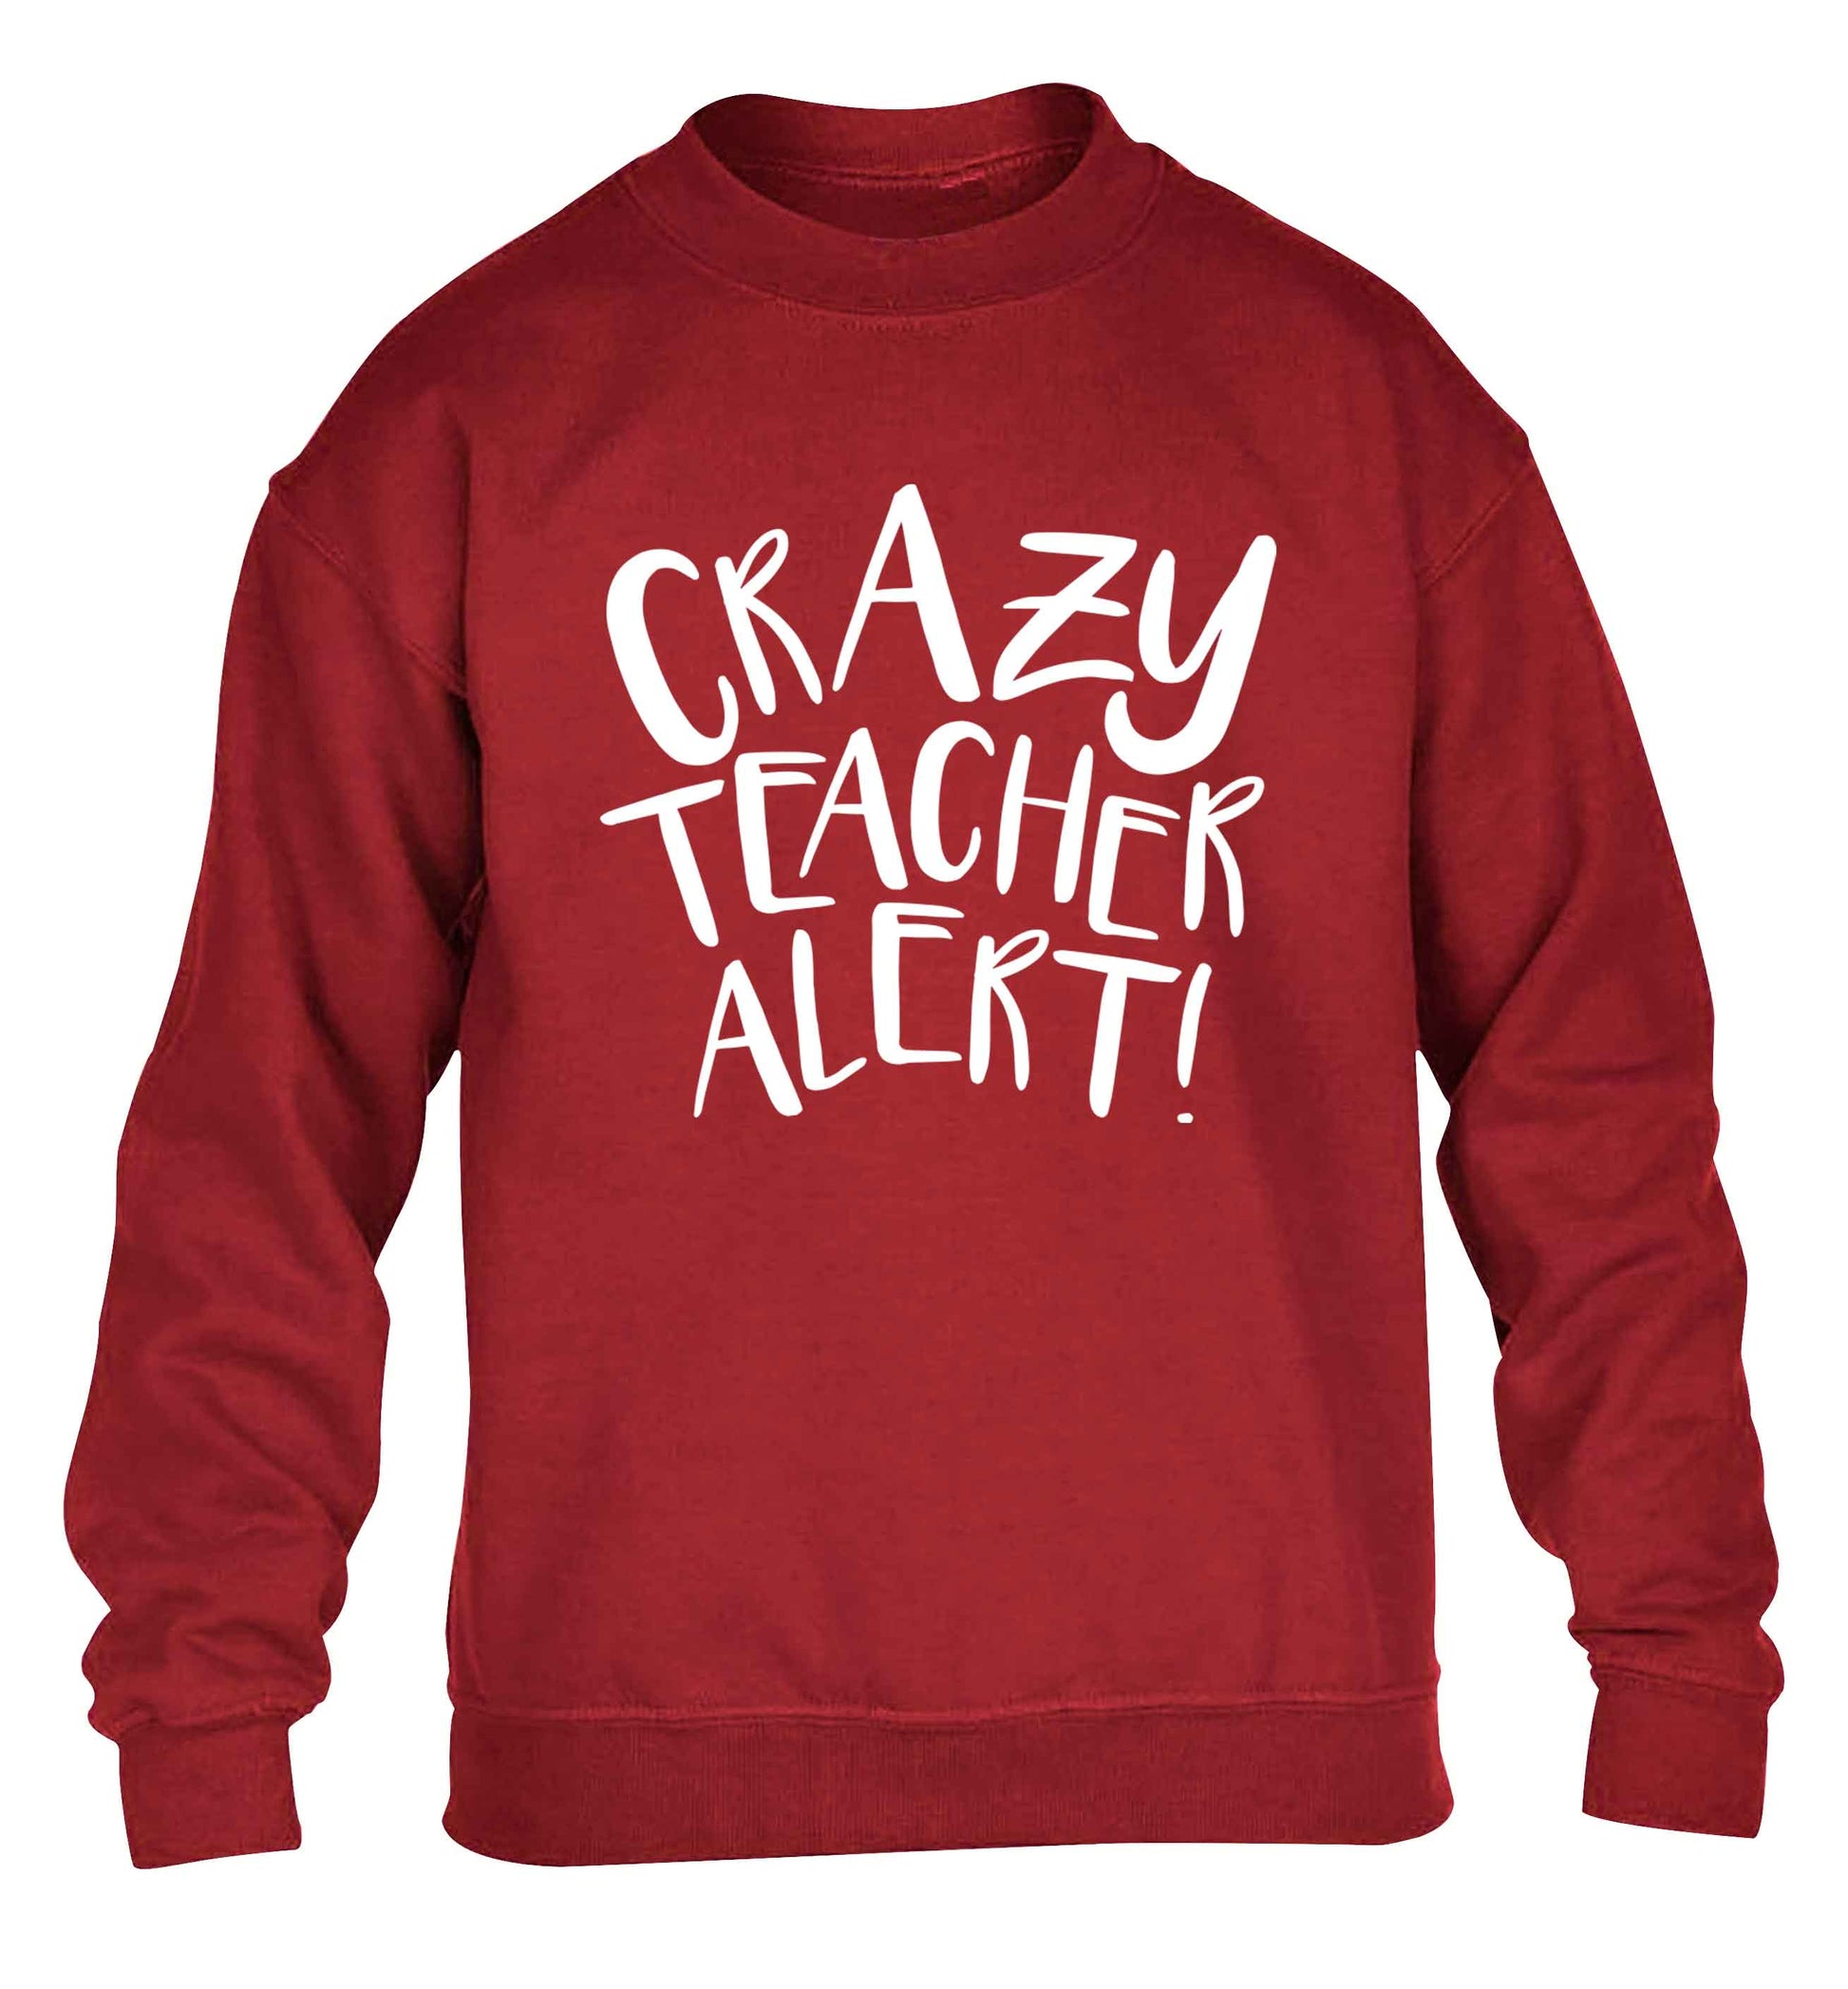 Crazy teacher alert children's grey sweater 12-13 Years